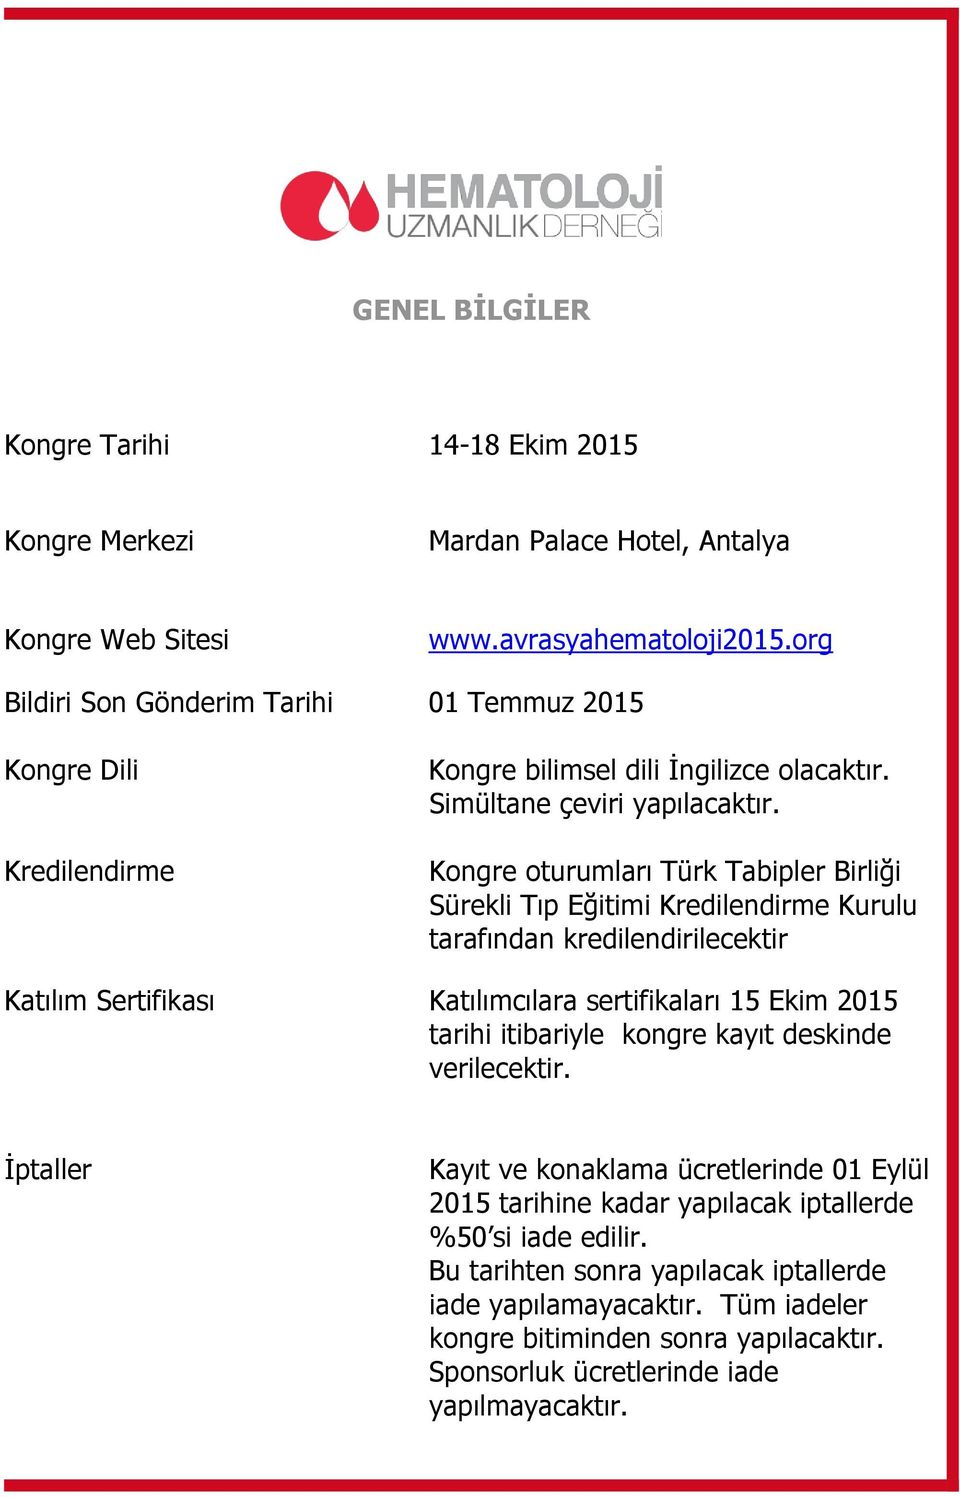 Kongre oturumları Türk Tabipler Birliği Sürekli Tıp Eğitimi Kredilendirme Kurulu tarafından kredilendirilecektir Katılım Sertifikası Katılımcılara sertifikaları 15 Ekim 2015 tarihi itibariyle